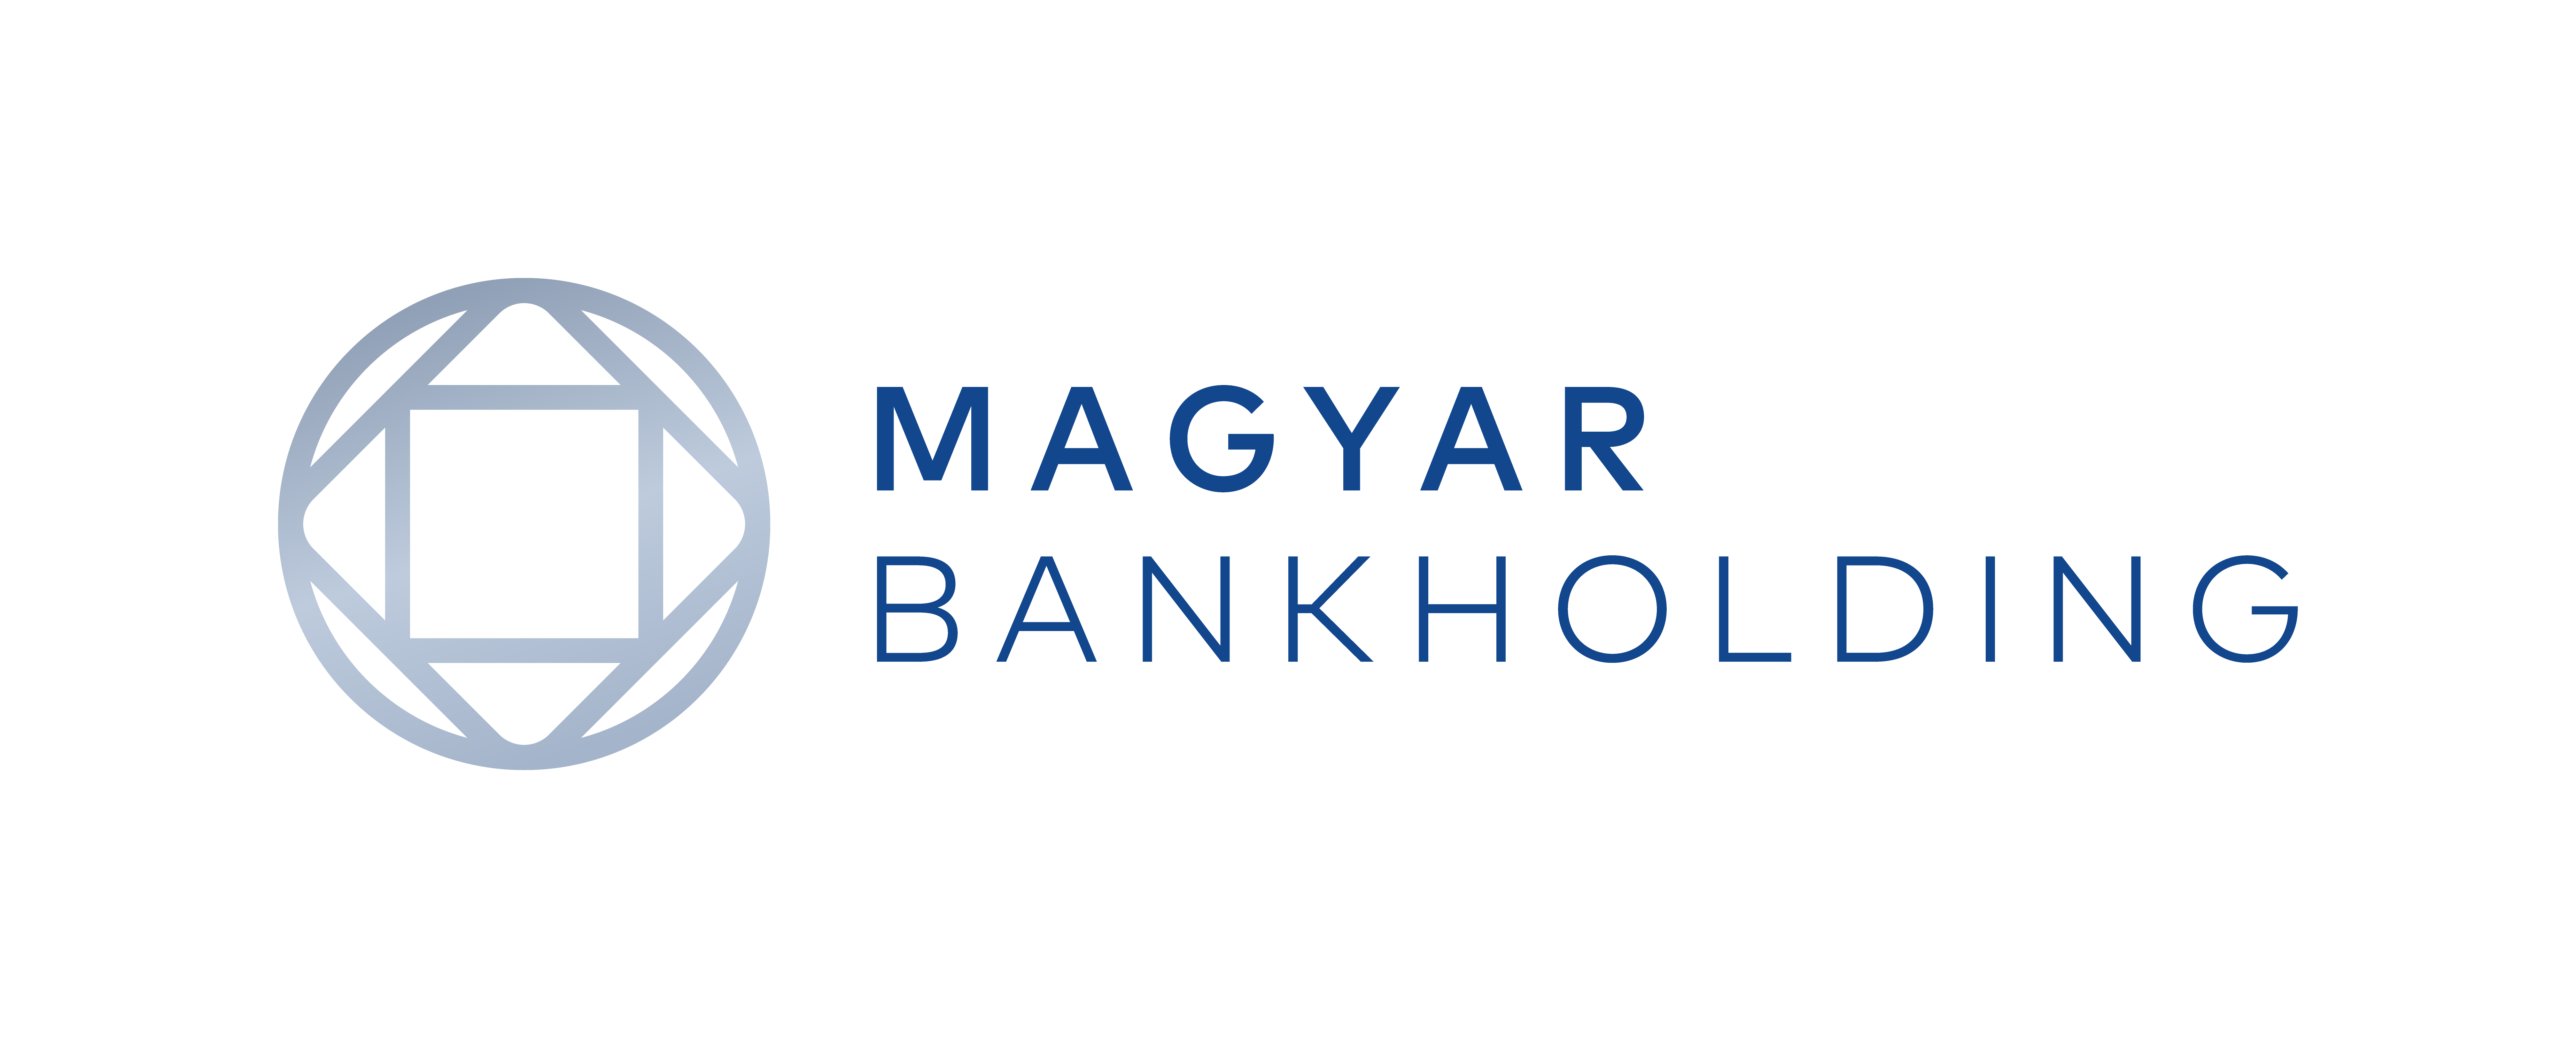 Kiemelt szakmai partnerünk a Magyar Bankholding.